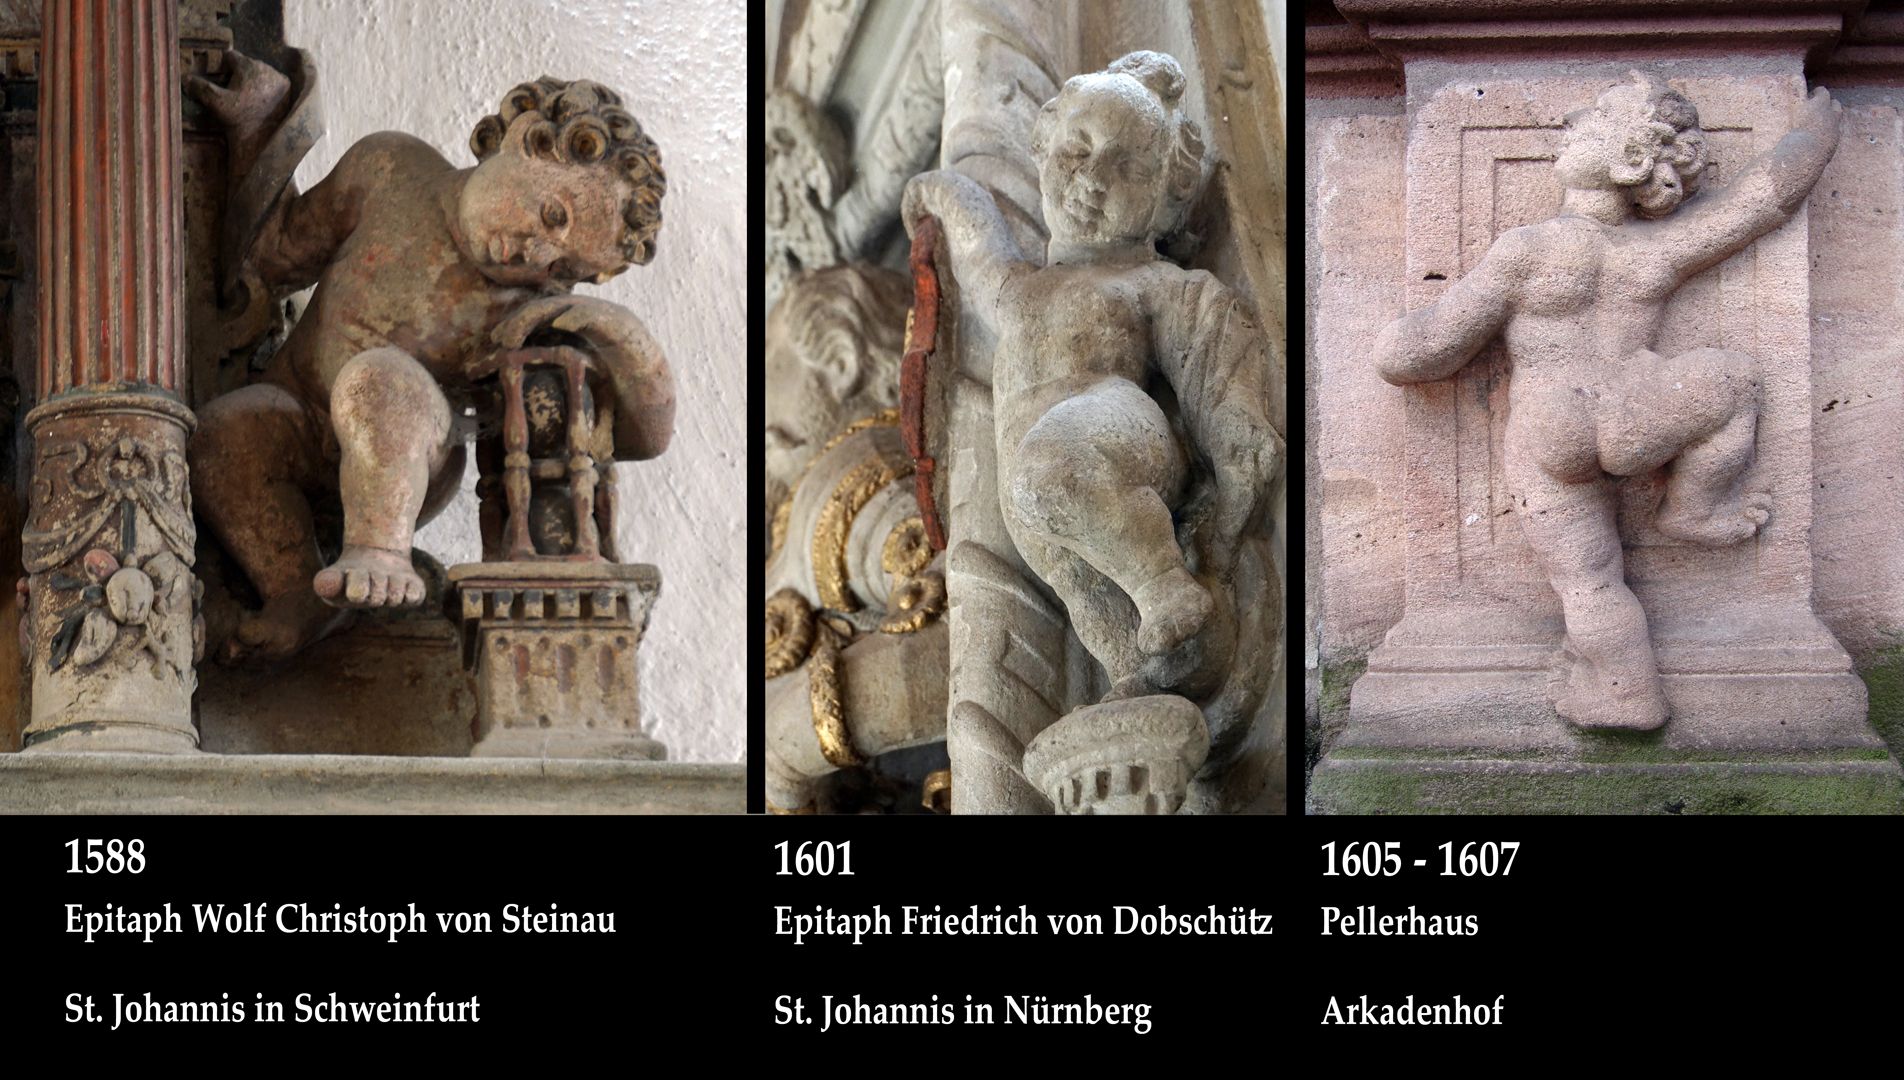 Epitaph für Friedrich von Dobschütz Bildvergleich mit zwei weiteren Puttos